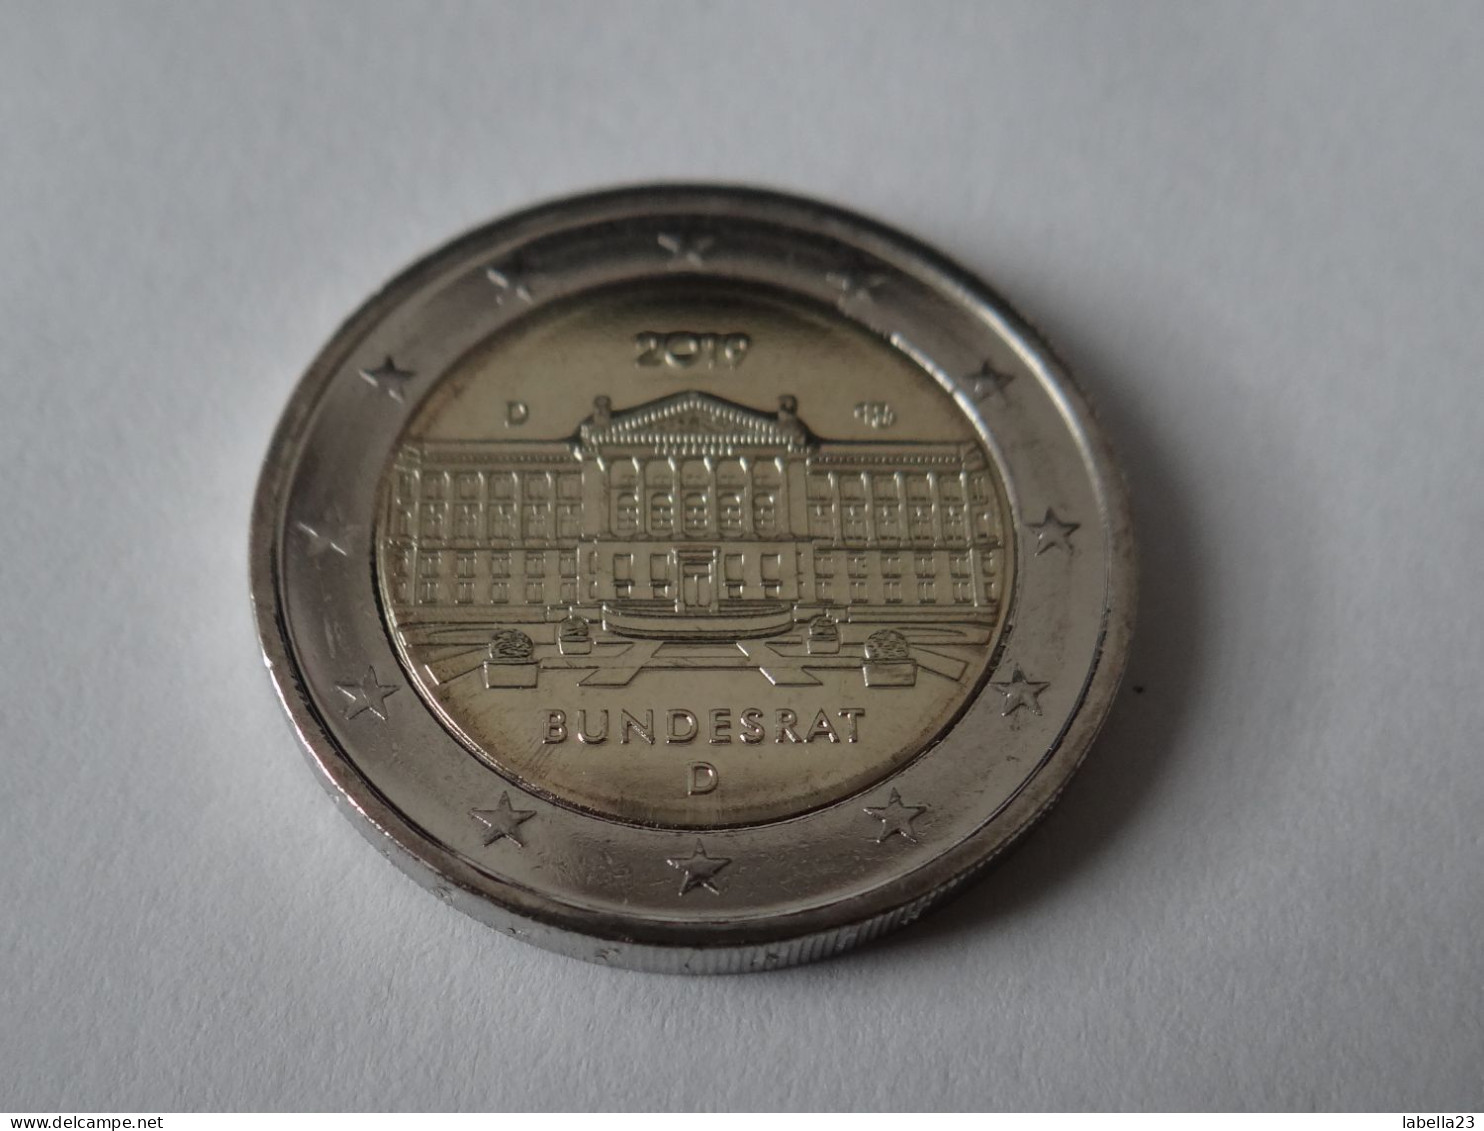 2 Euro Gedenkmünze 2019 -"Bundesrat", Ausg.D München - Germany